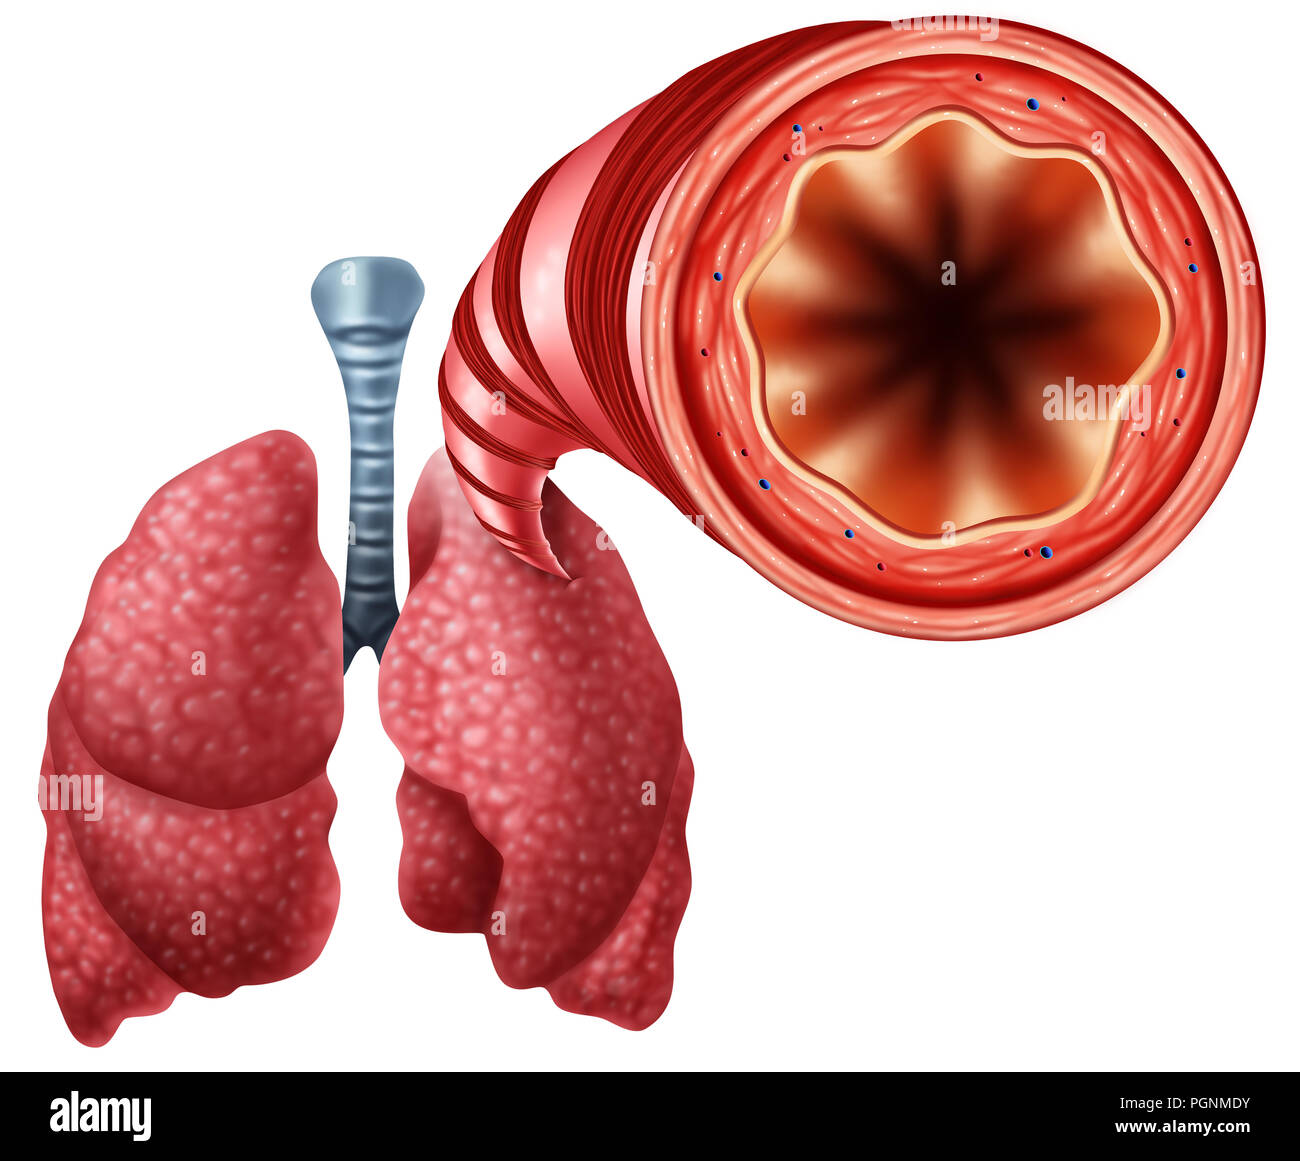 Gesunde bronchialen Schlauch mit menschlichen Lungen Nahaufnahme Anatomie als Symbol für open air an den Atemwegen mit 3D-Illustration Elemente. Stockfoto